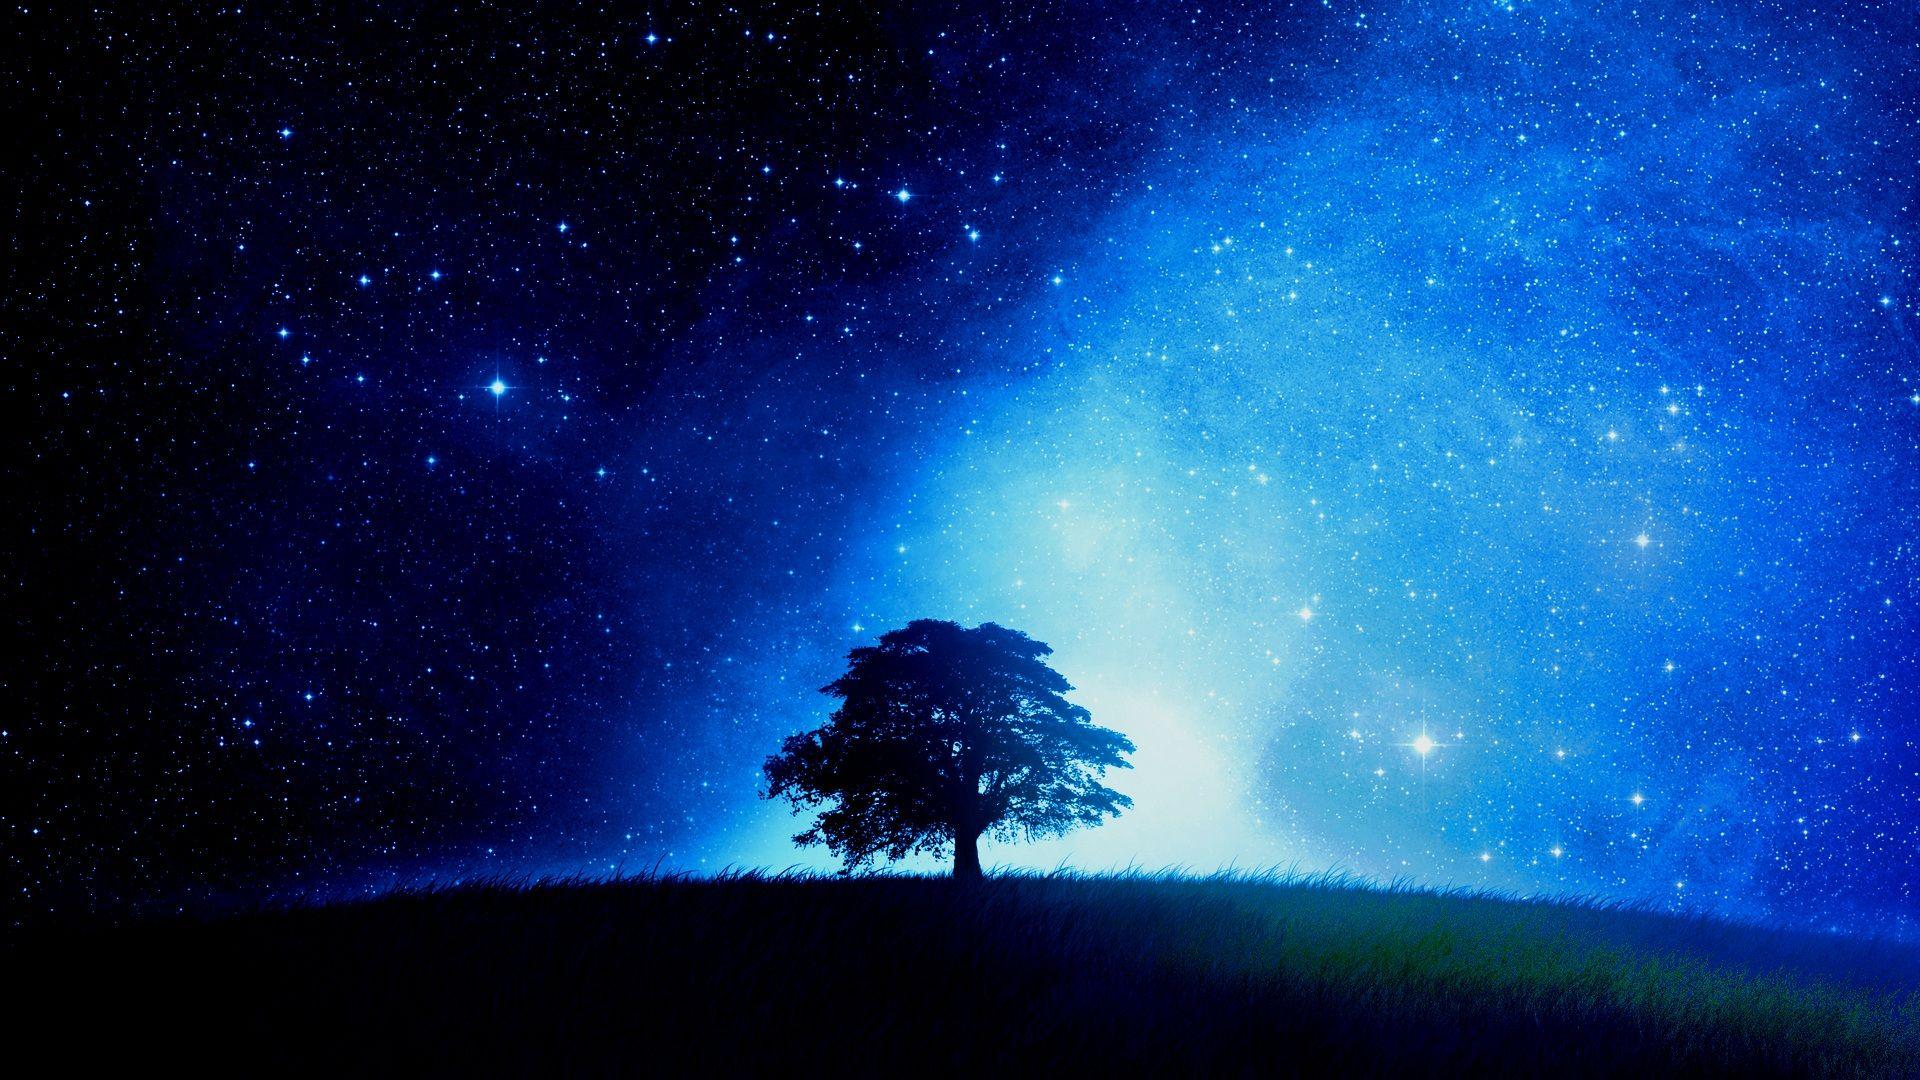 Bức hình nền đêm xanh lam sẽ mang đến cho bạn cảm giác thư giãn và yên bình. Hình ảnh của bầu trời đêm, những ngôi sao và ánh trăng được phối hợp hài hòa với nhau tạo nên một bức tranh tự nhiên tuyệt đẹp. Hãy để hình nền này làm cho màn hình máy tính của bạn thêm phần độc đáo và đẹp mắt.